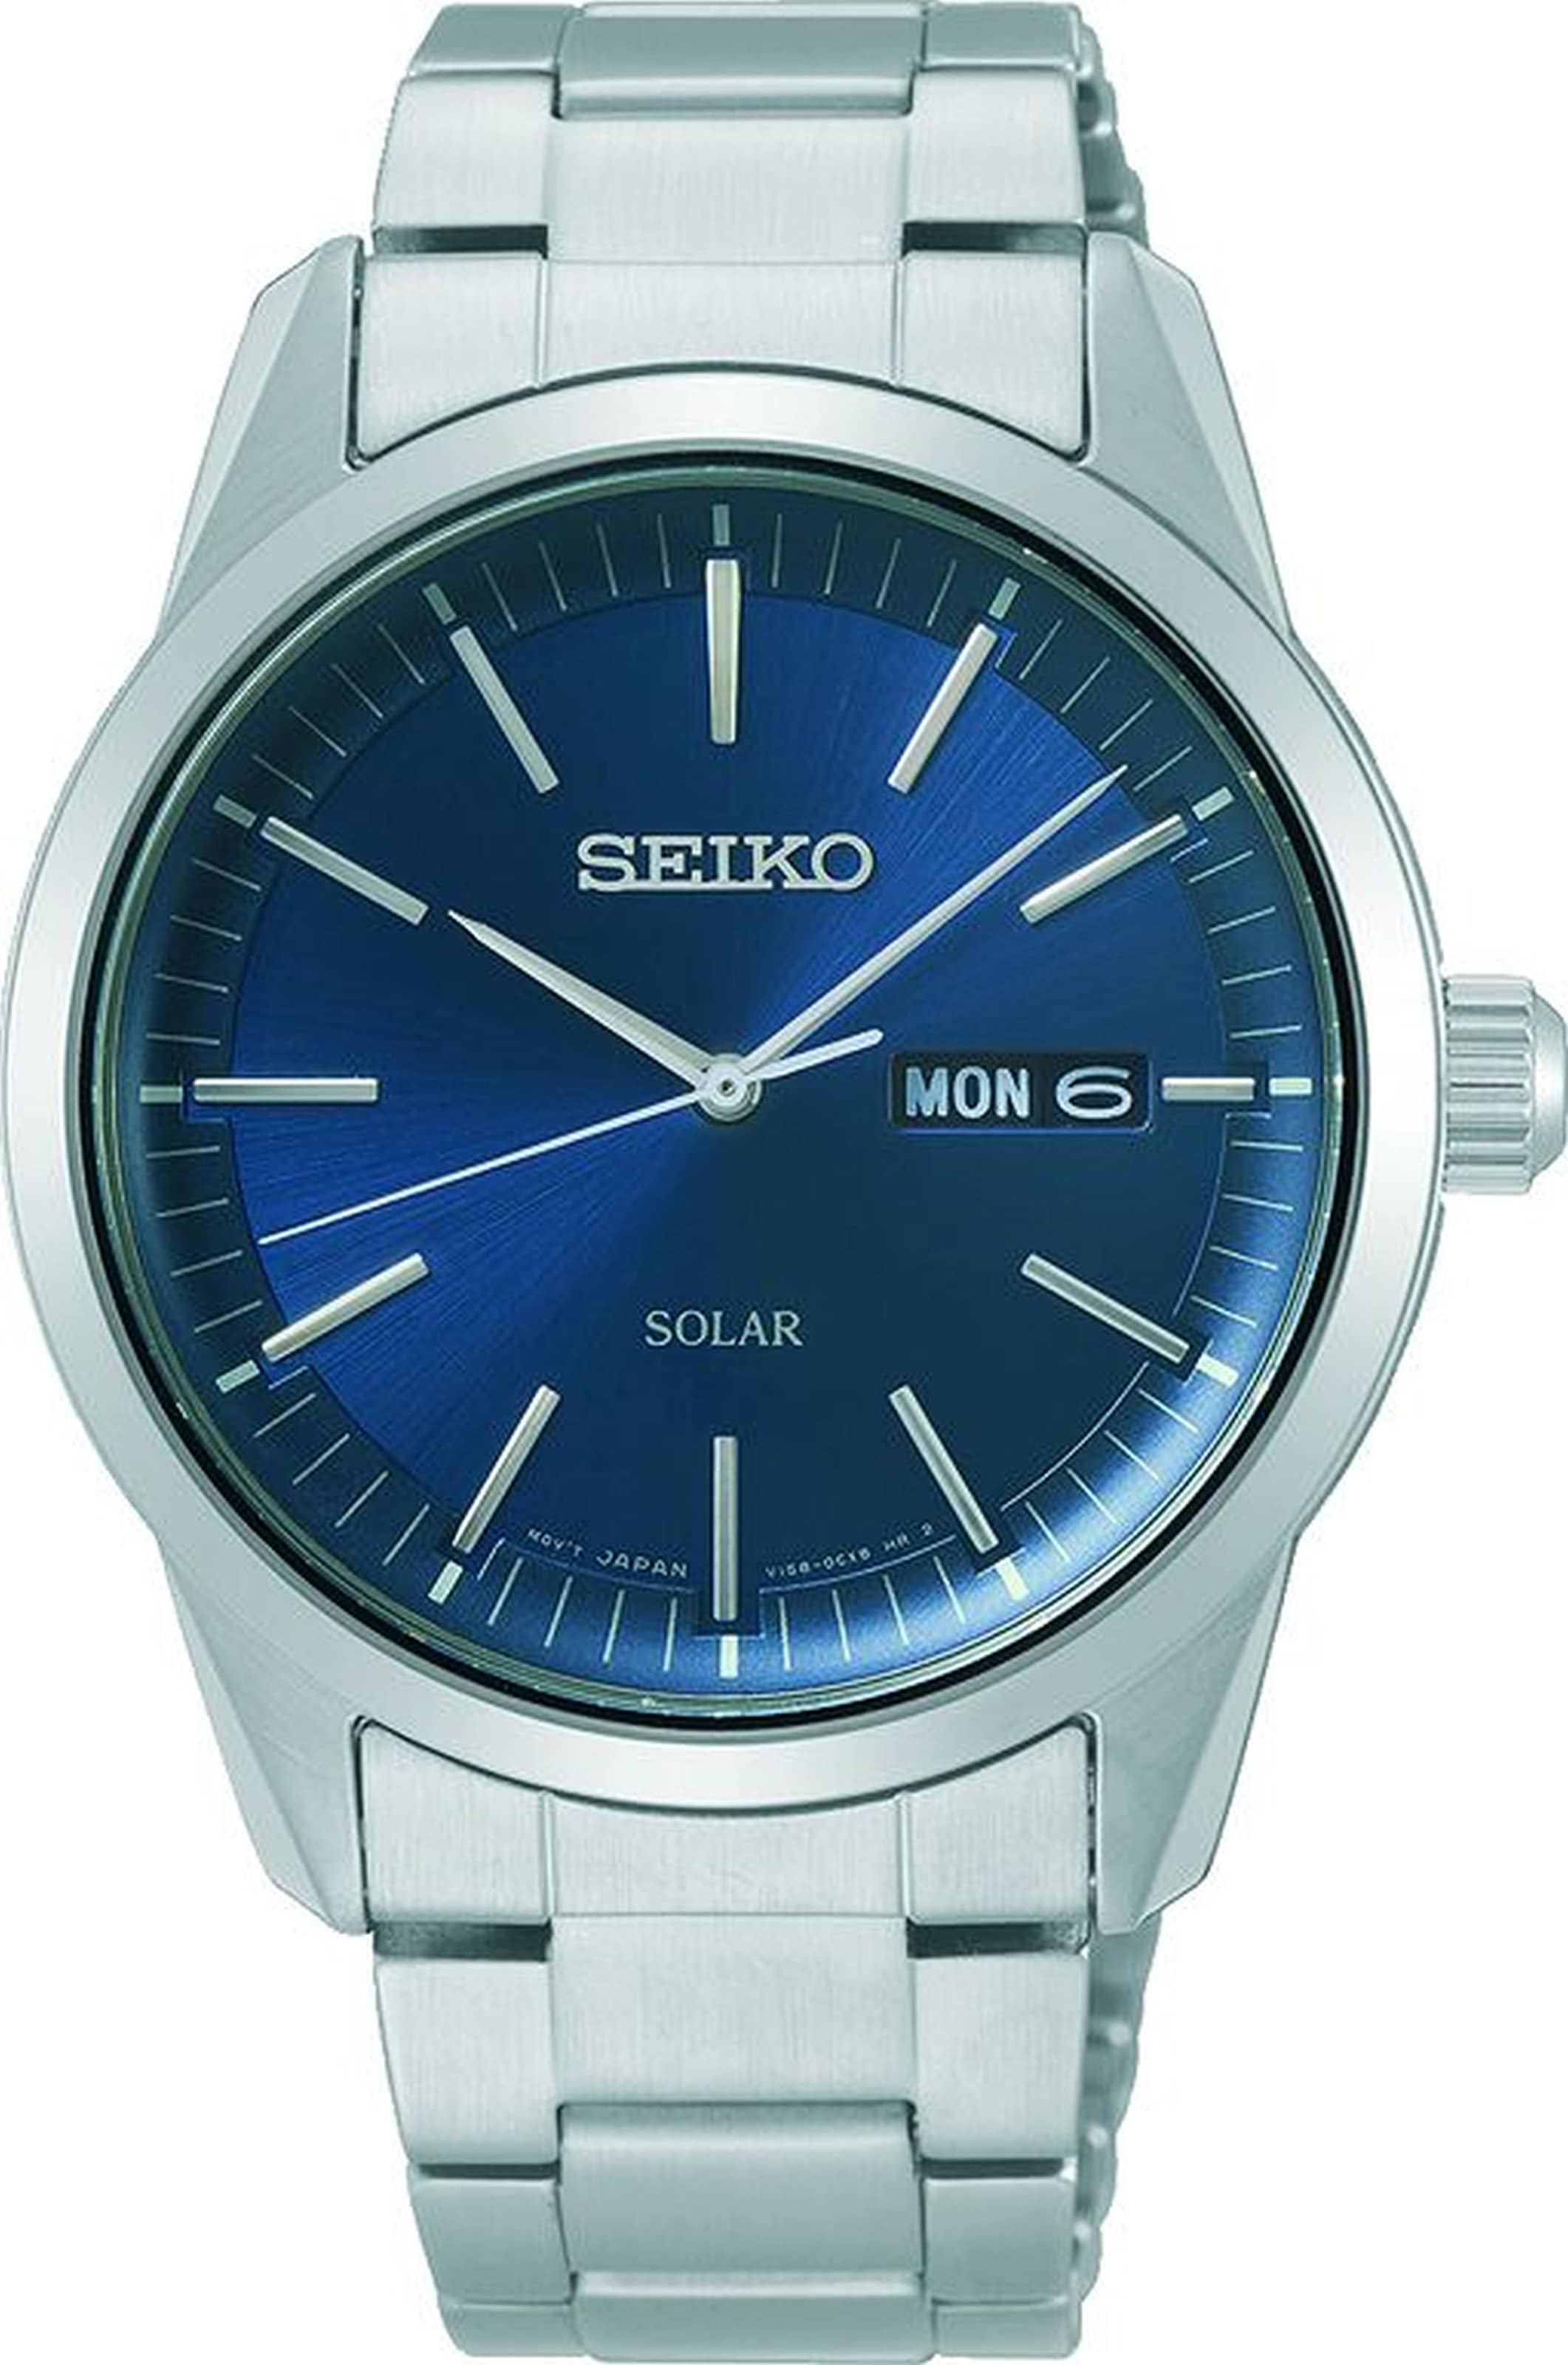 Seiko Solaruhr »SNE525P1«, Armbanduhr, Herrenuhr, Datum, Saphirglas